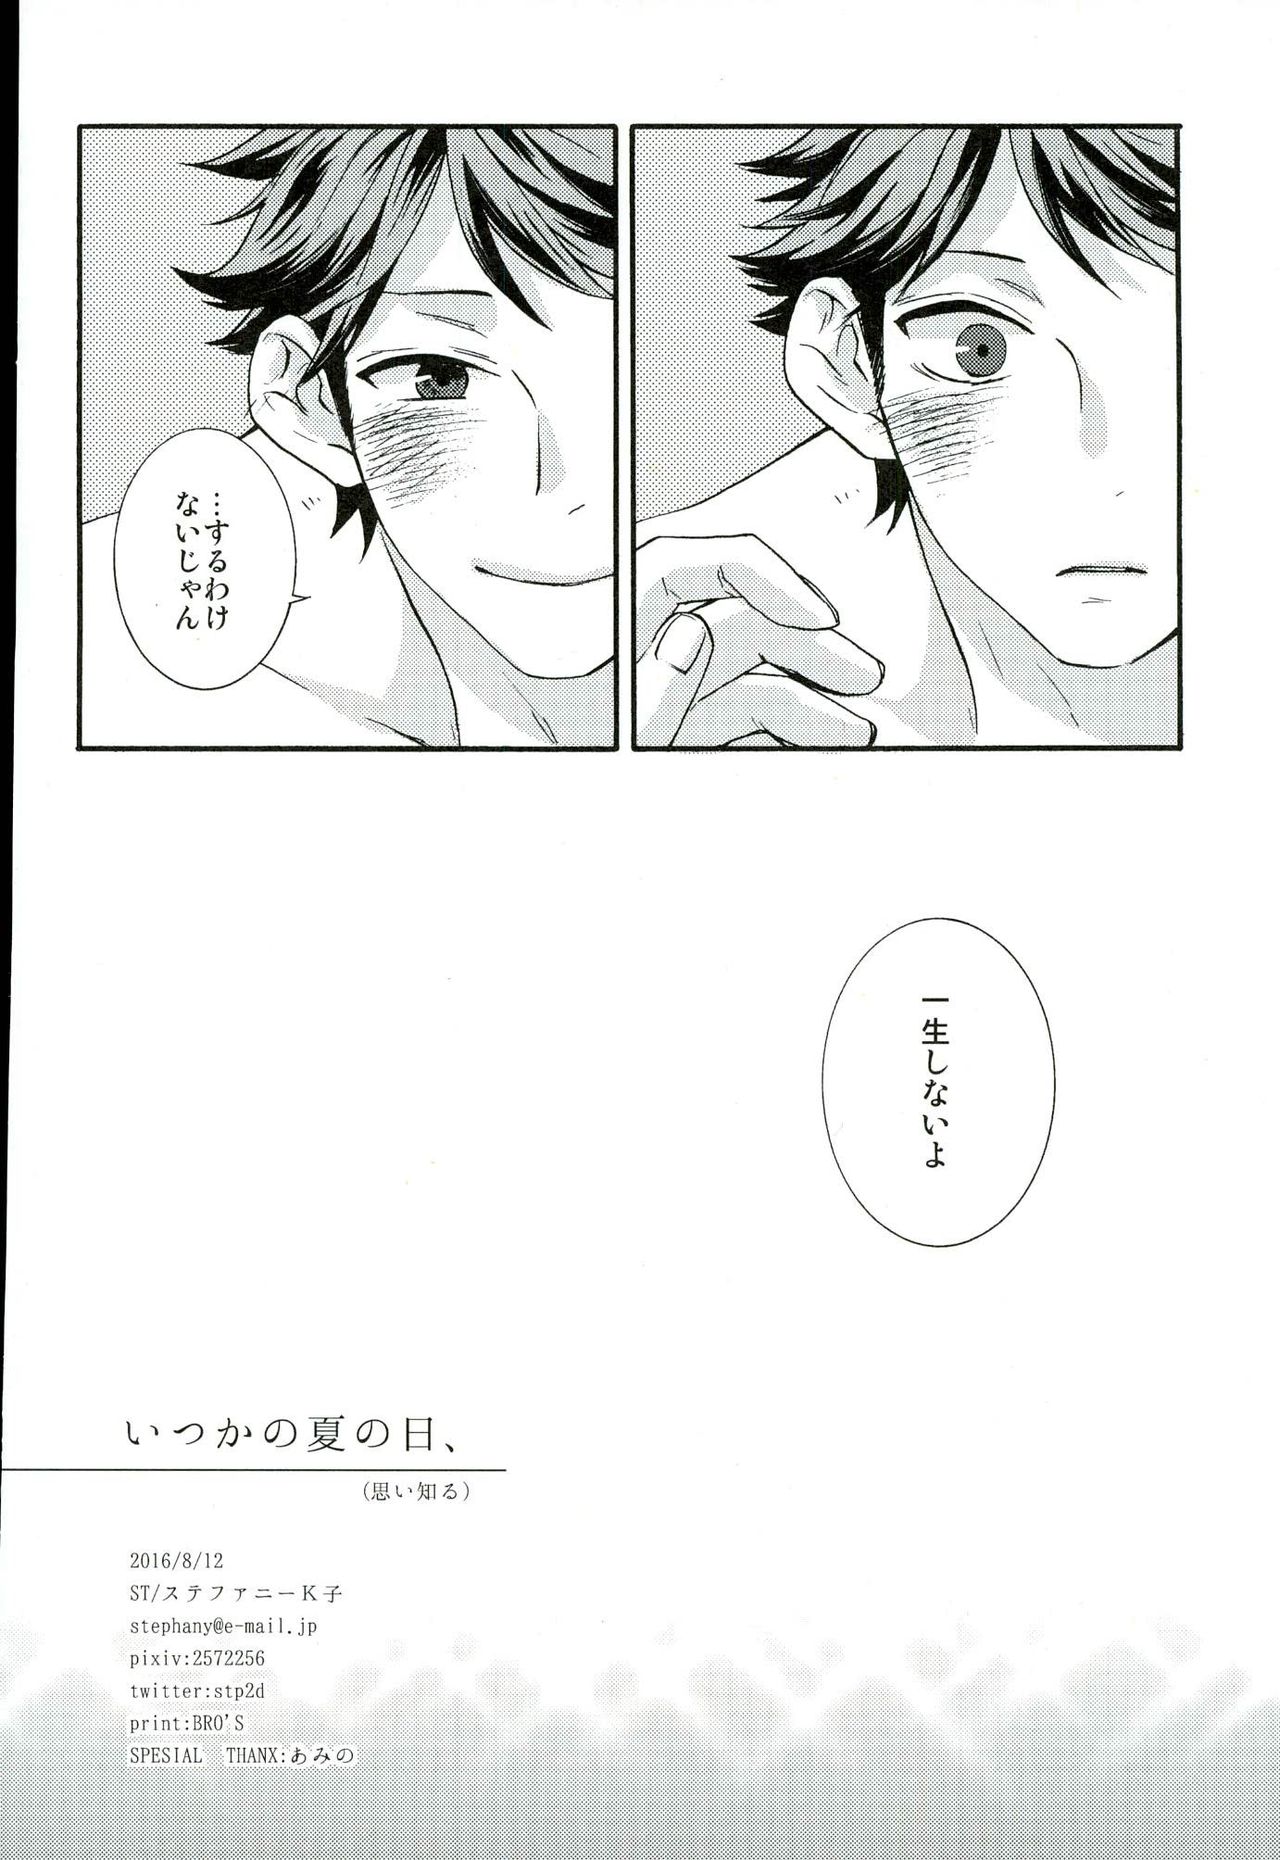 (C90) [ST (Stephany K Ko)] Itsuka no Natsu no Hi, (Haikyuu!!) page 17 full